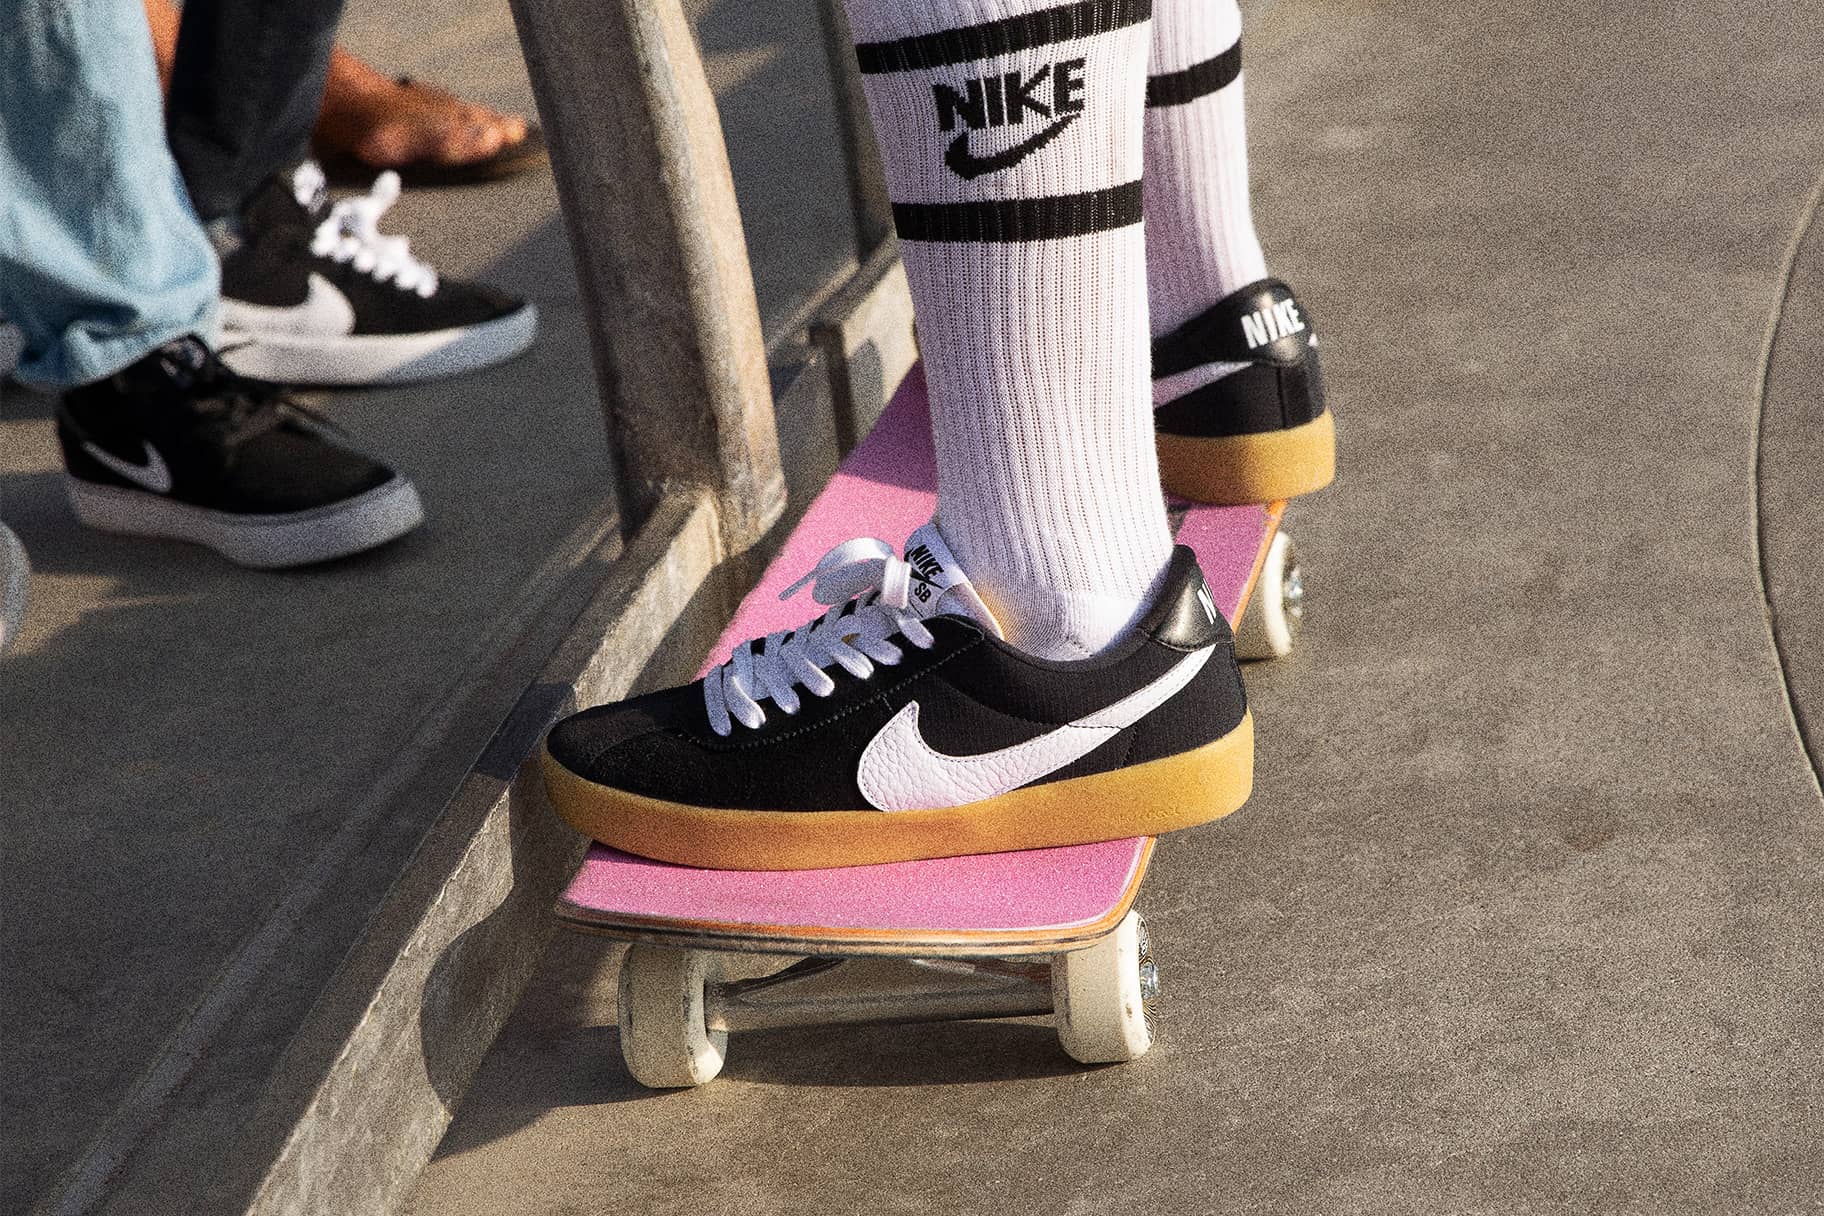 actualizar síndrome sorpresa El calzado de Nike ideal para skateboarding. Nike